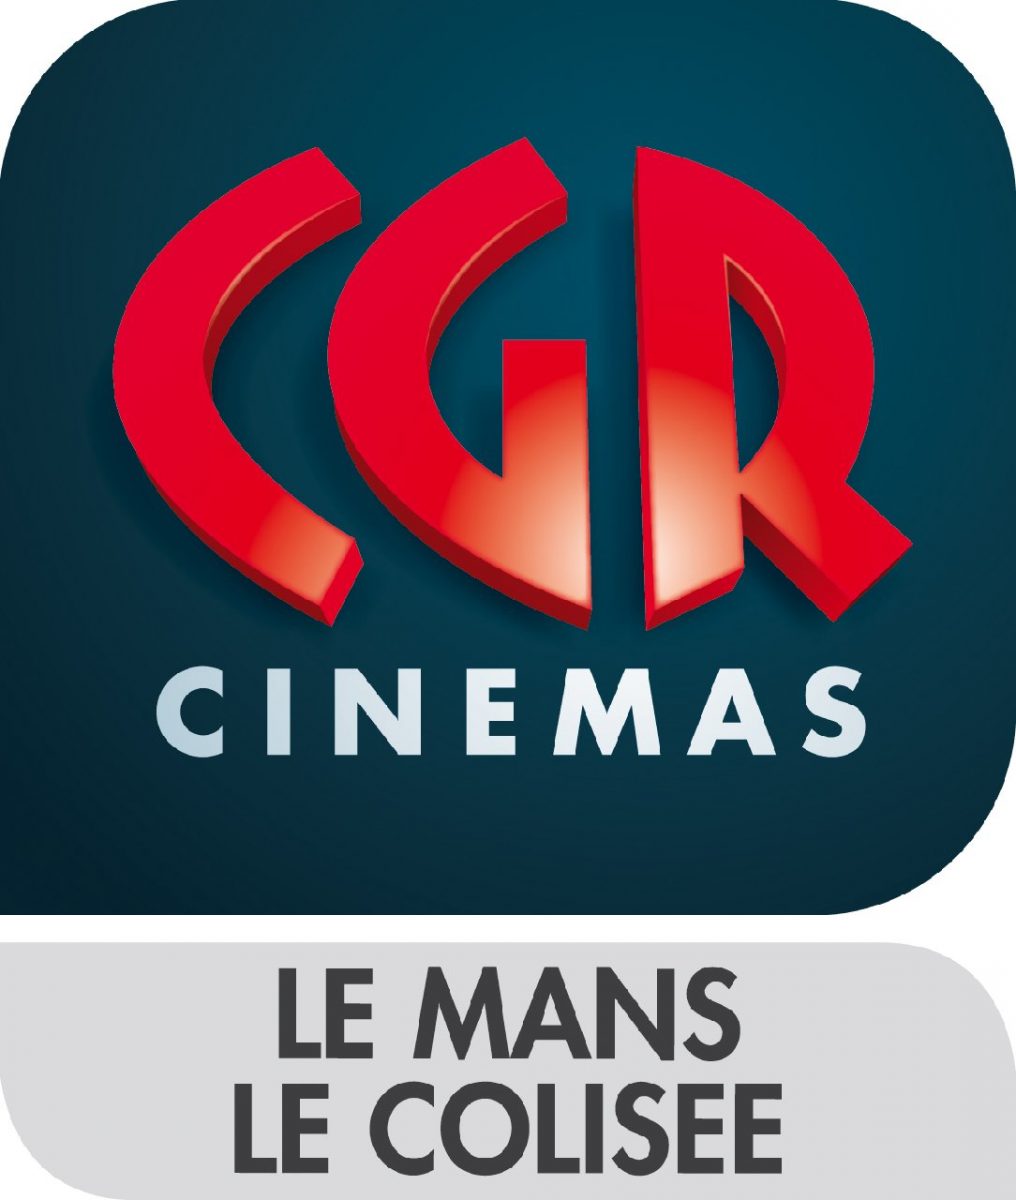 CINEMA CGR LE COLISEE à LE MANS | Sarthe Tourisme